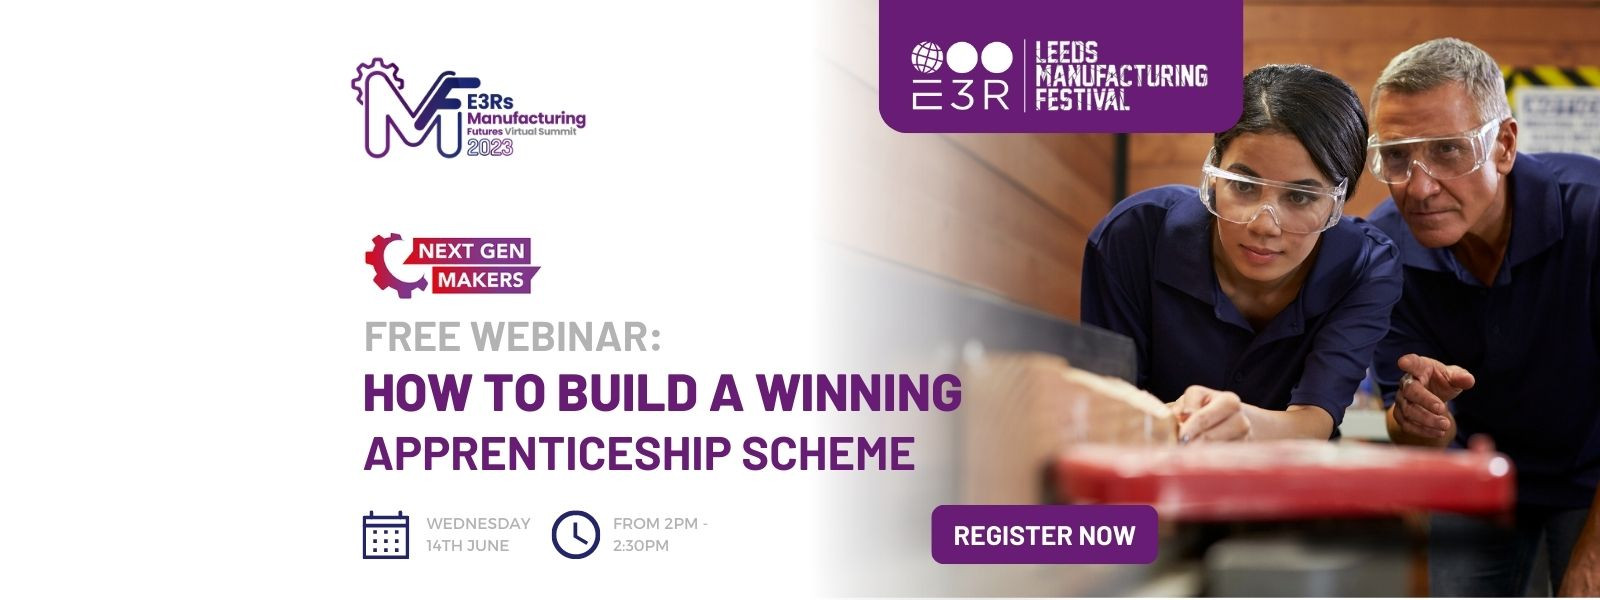 Free Webinar: How to Build a Winning Apprenticeship Scheme